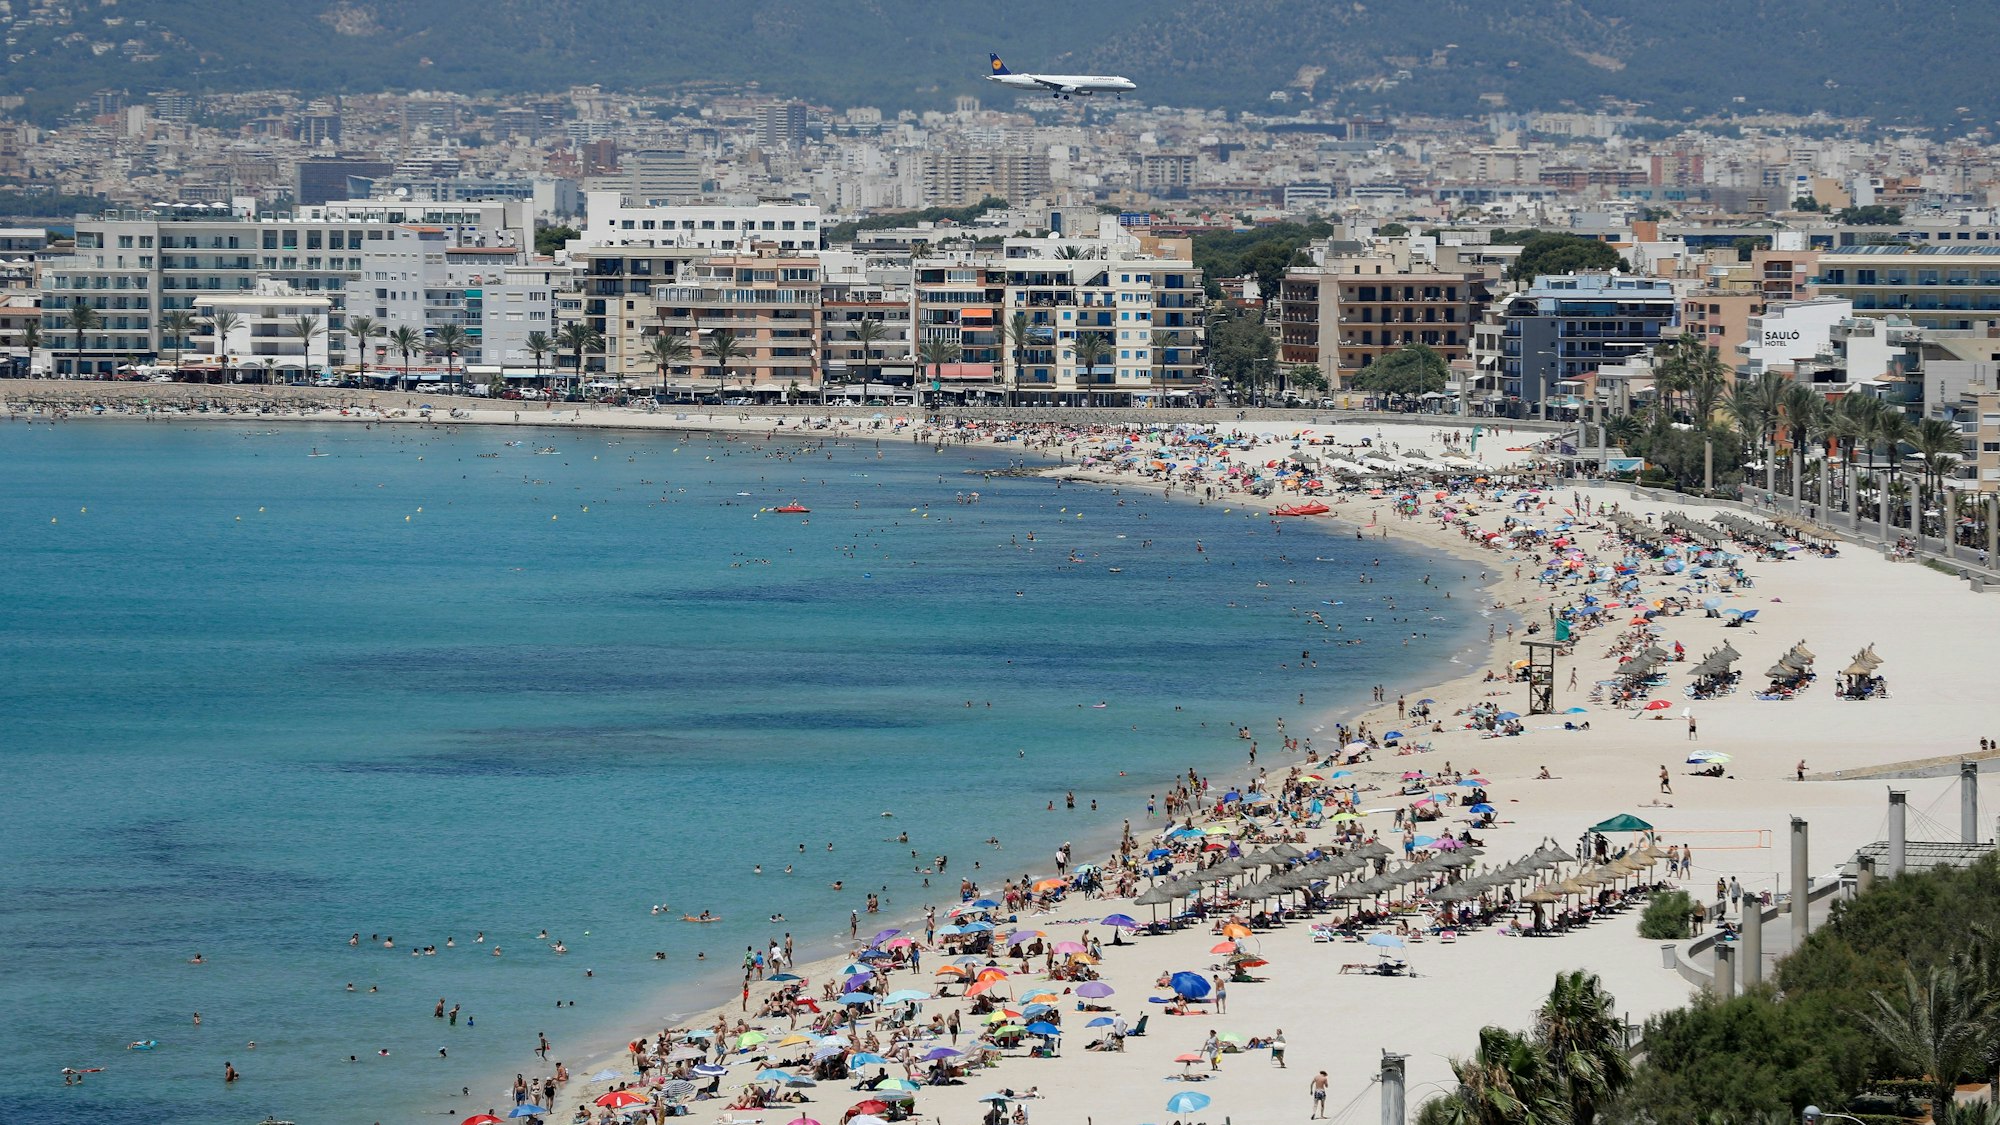 Ein Flugzeug der Lufthansa überfliegt den Strand von Arenal auf Mallorca.